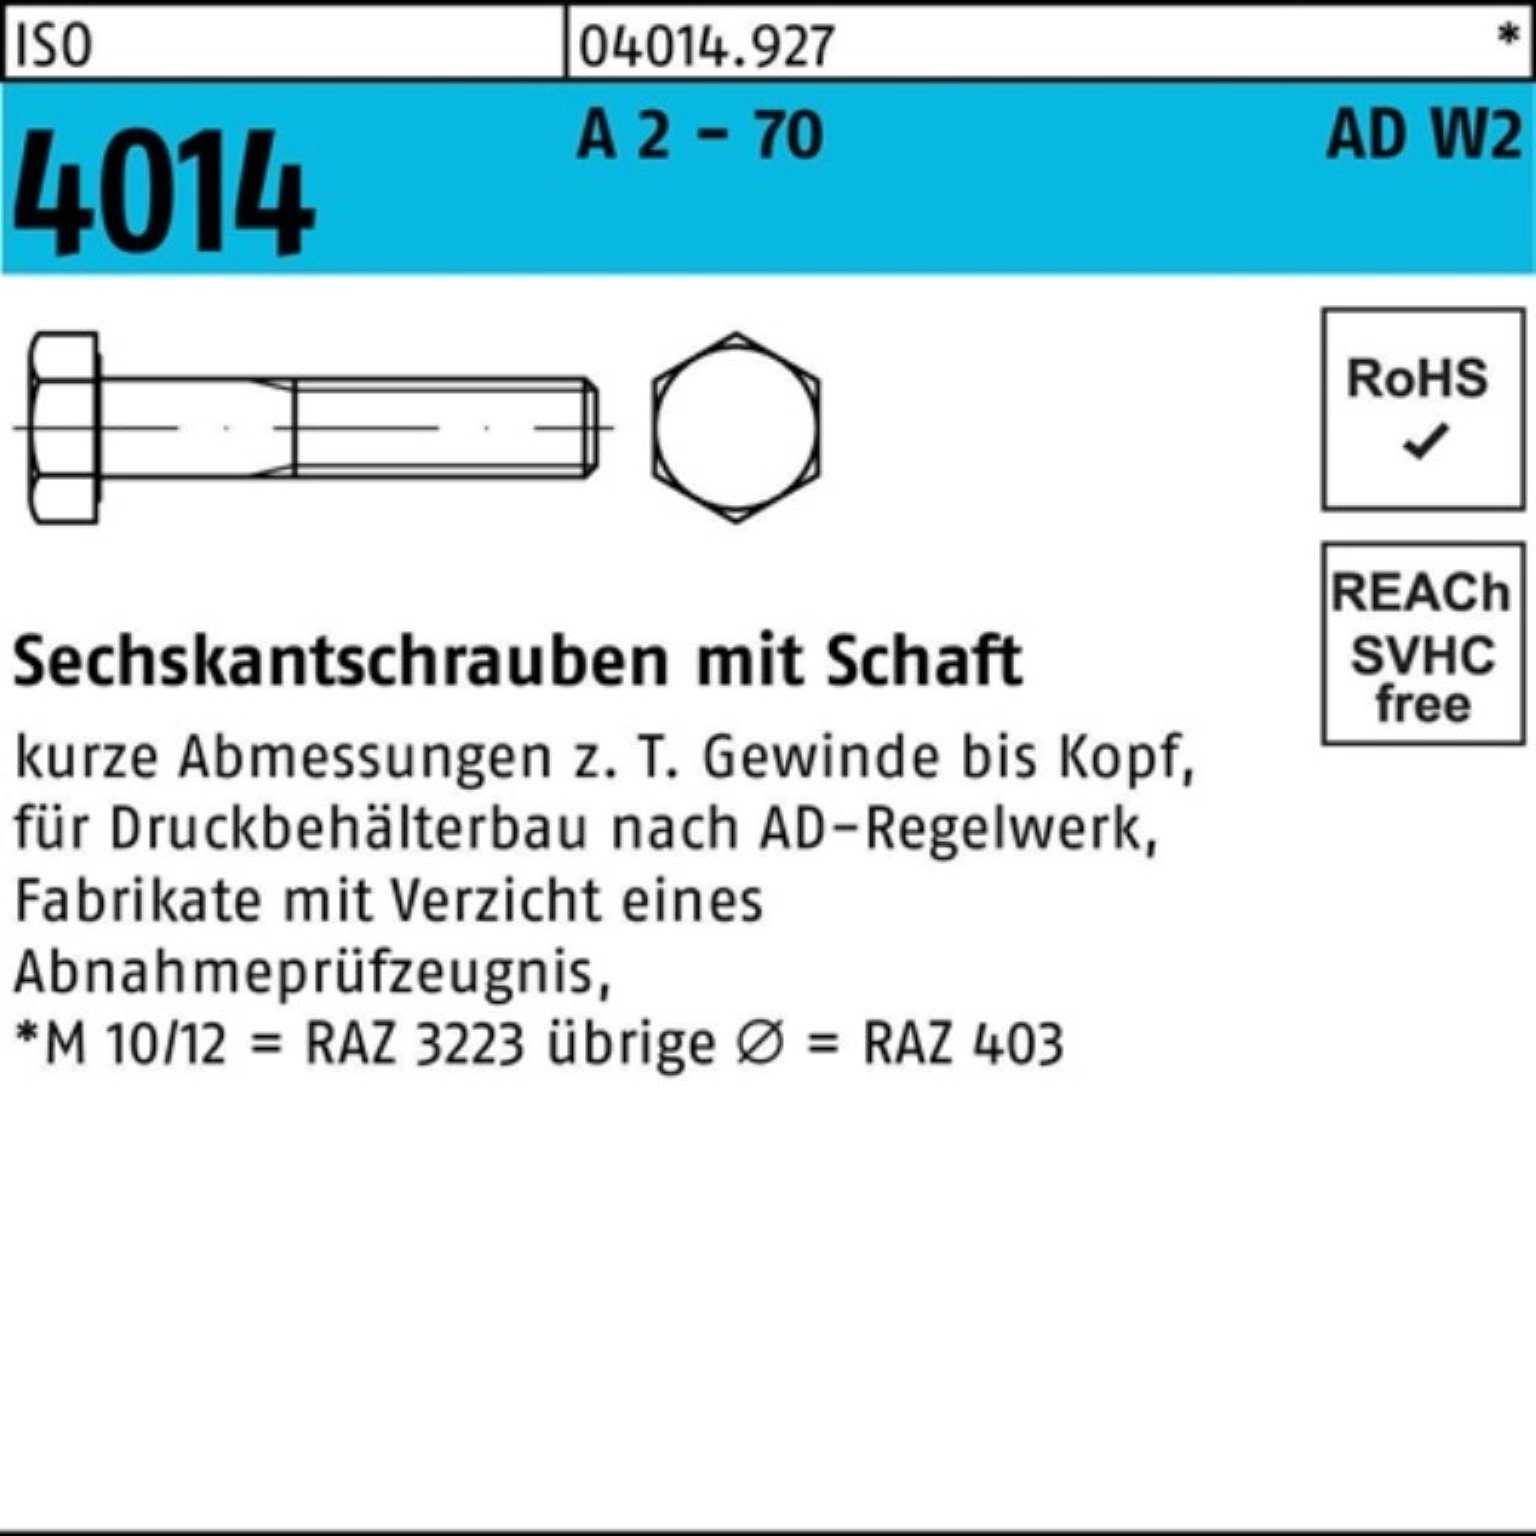 Bufab Sechskantschraube 100er 4014 10 M10x 70 2 AD-W2 Sechskantschraube A Pack ISO - Schaft 65